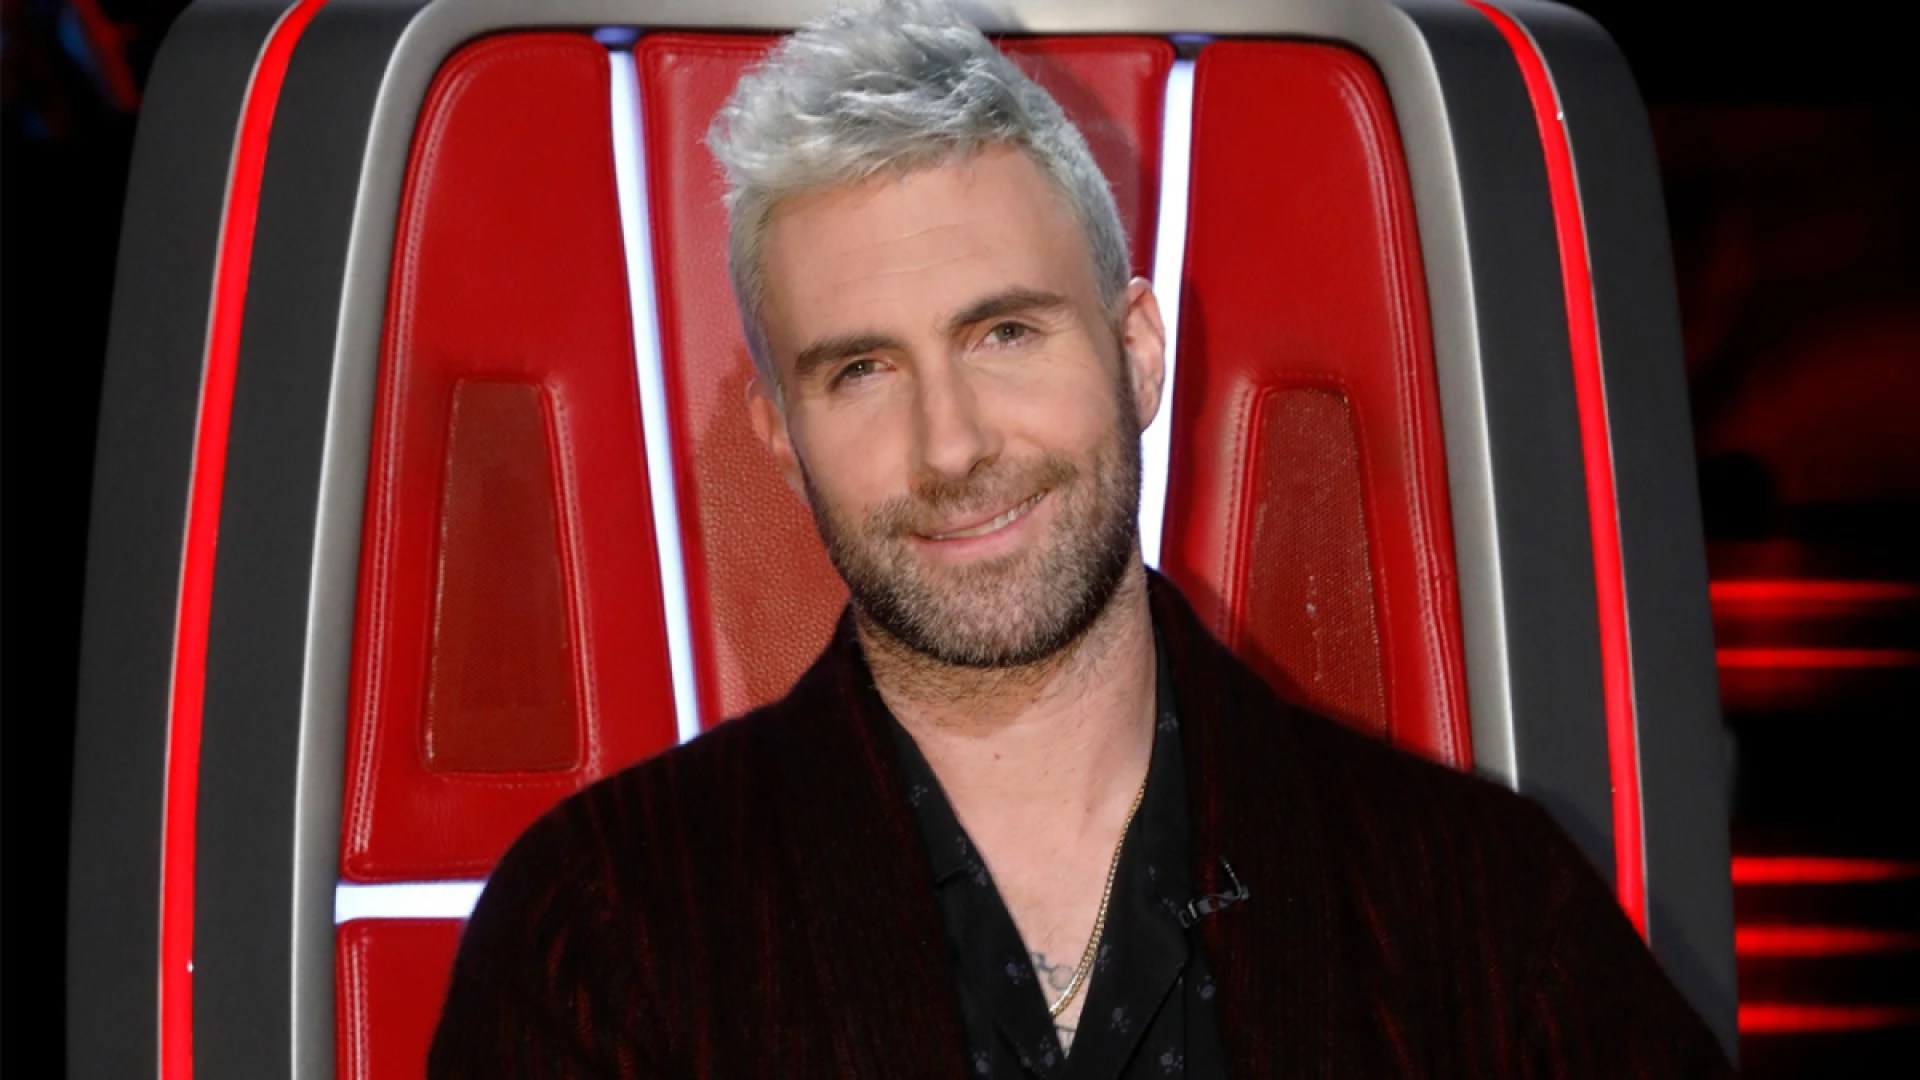 Adam Levine judge on The Voice